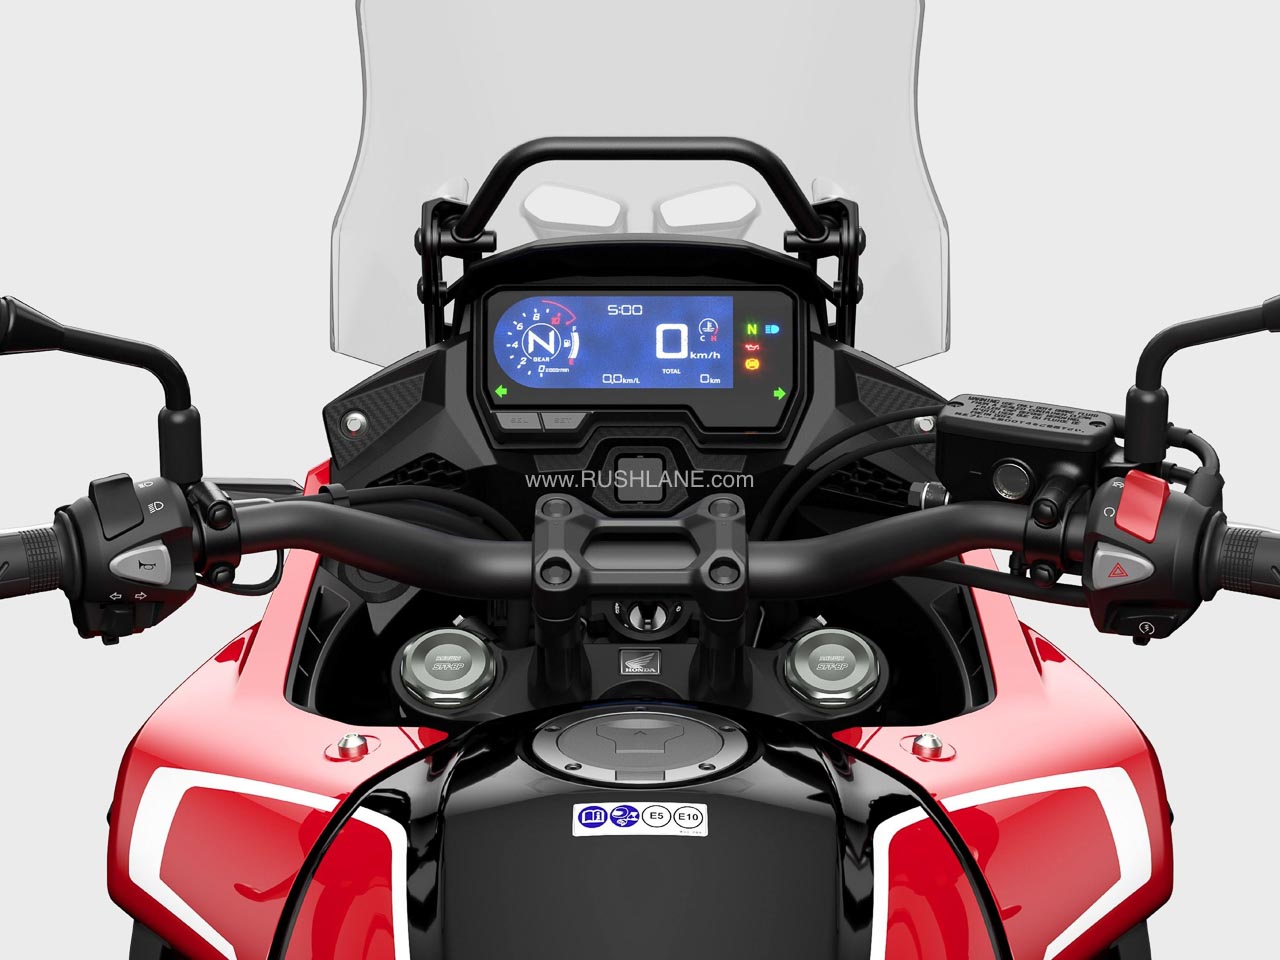 Honda Updates CB500 for 2022